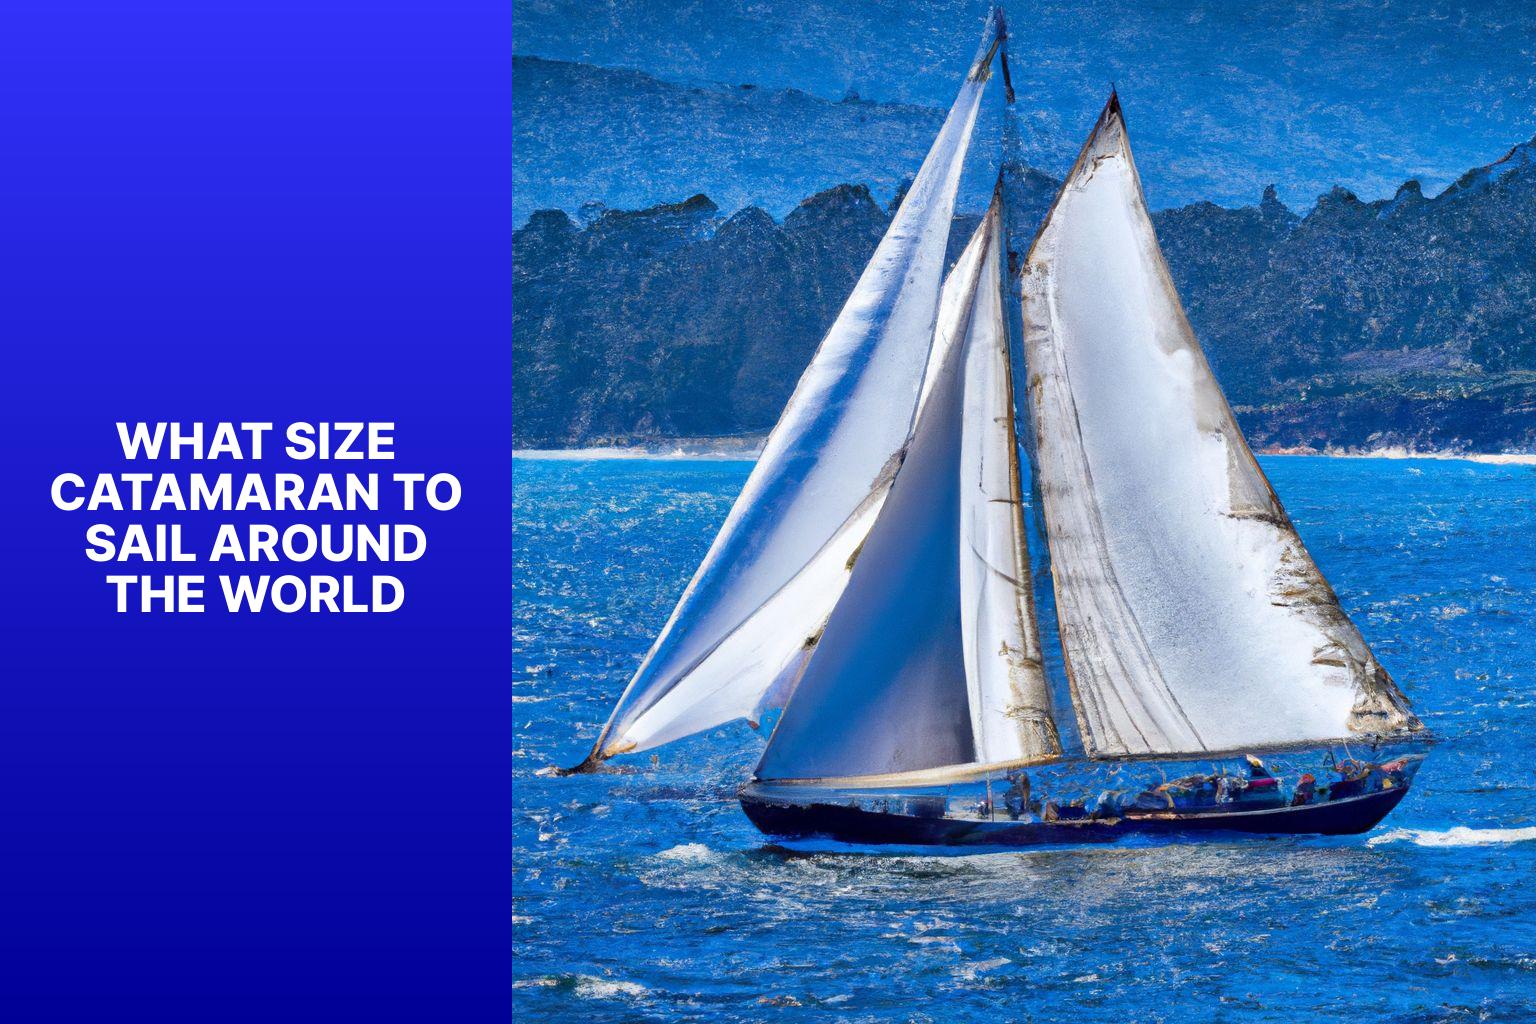 catamaran for sailing around the world